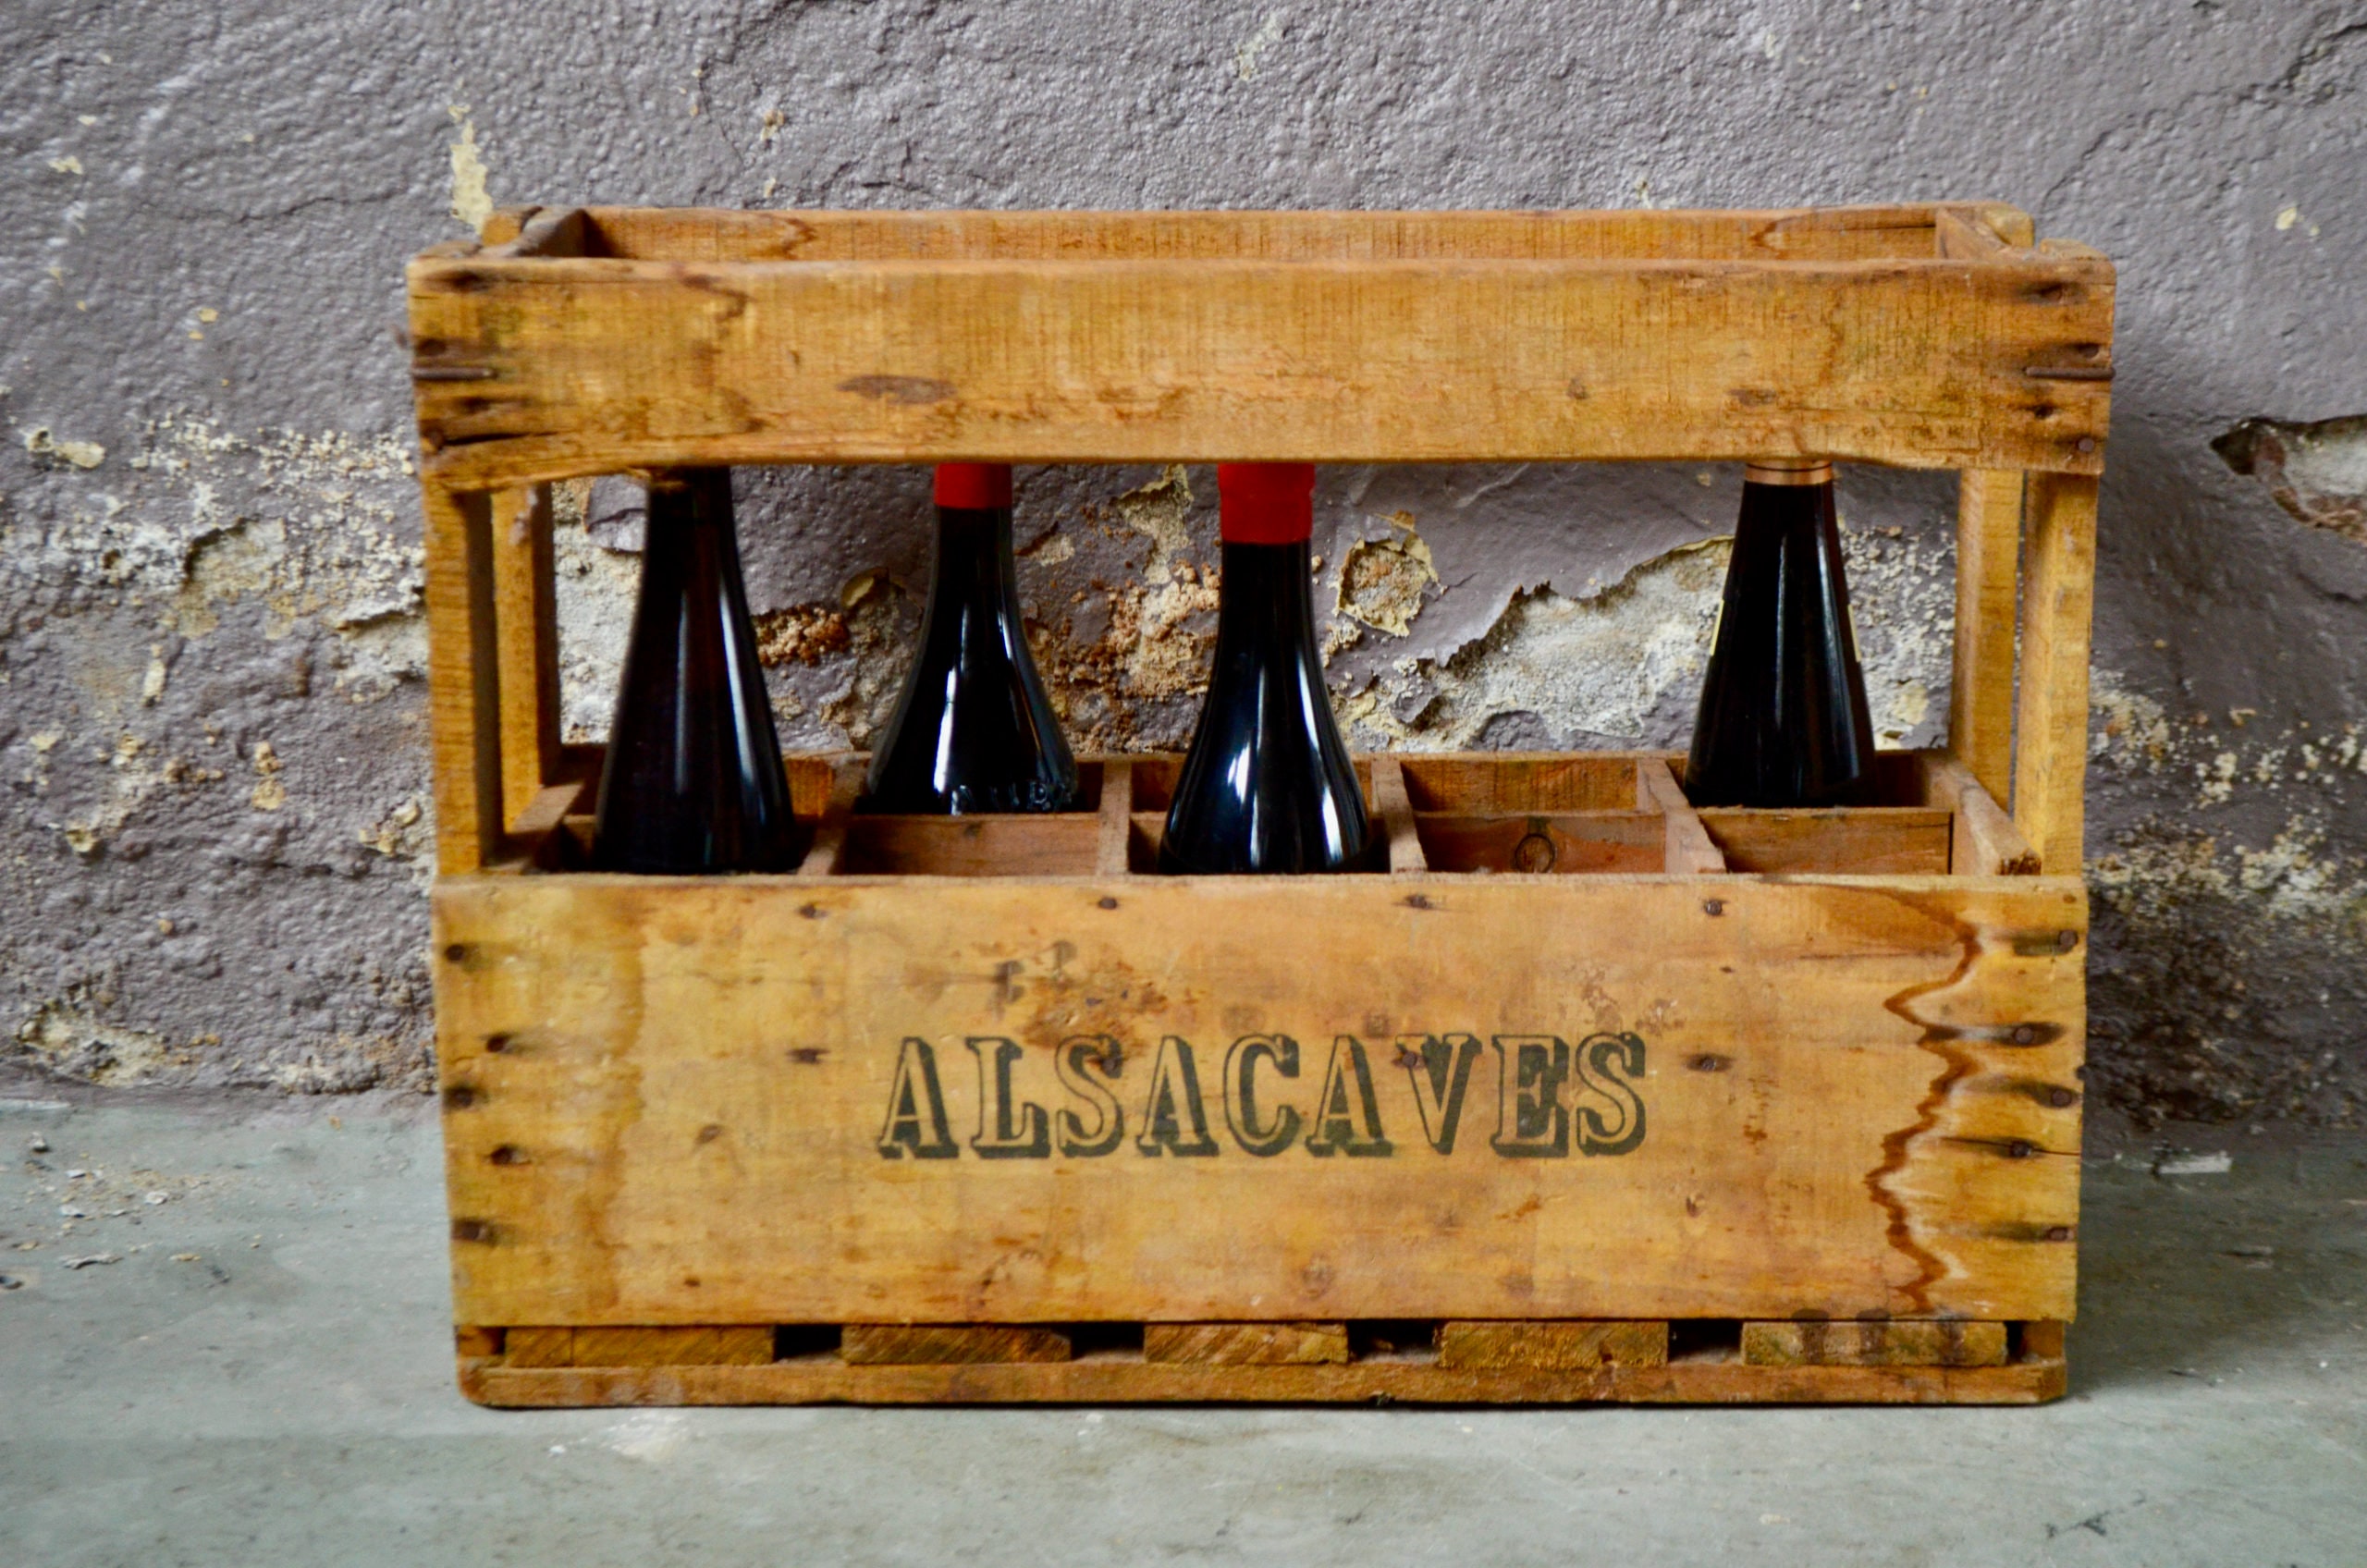 Boite de transport vintage pour 2 bouteilles de vin